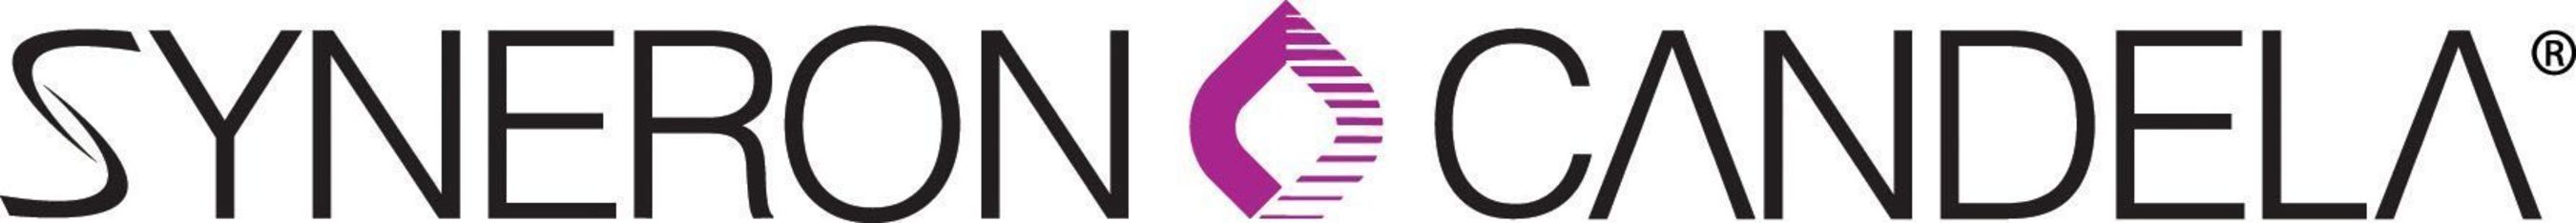 Image result for syneron candela logo